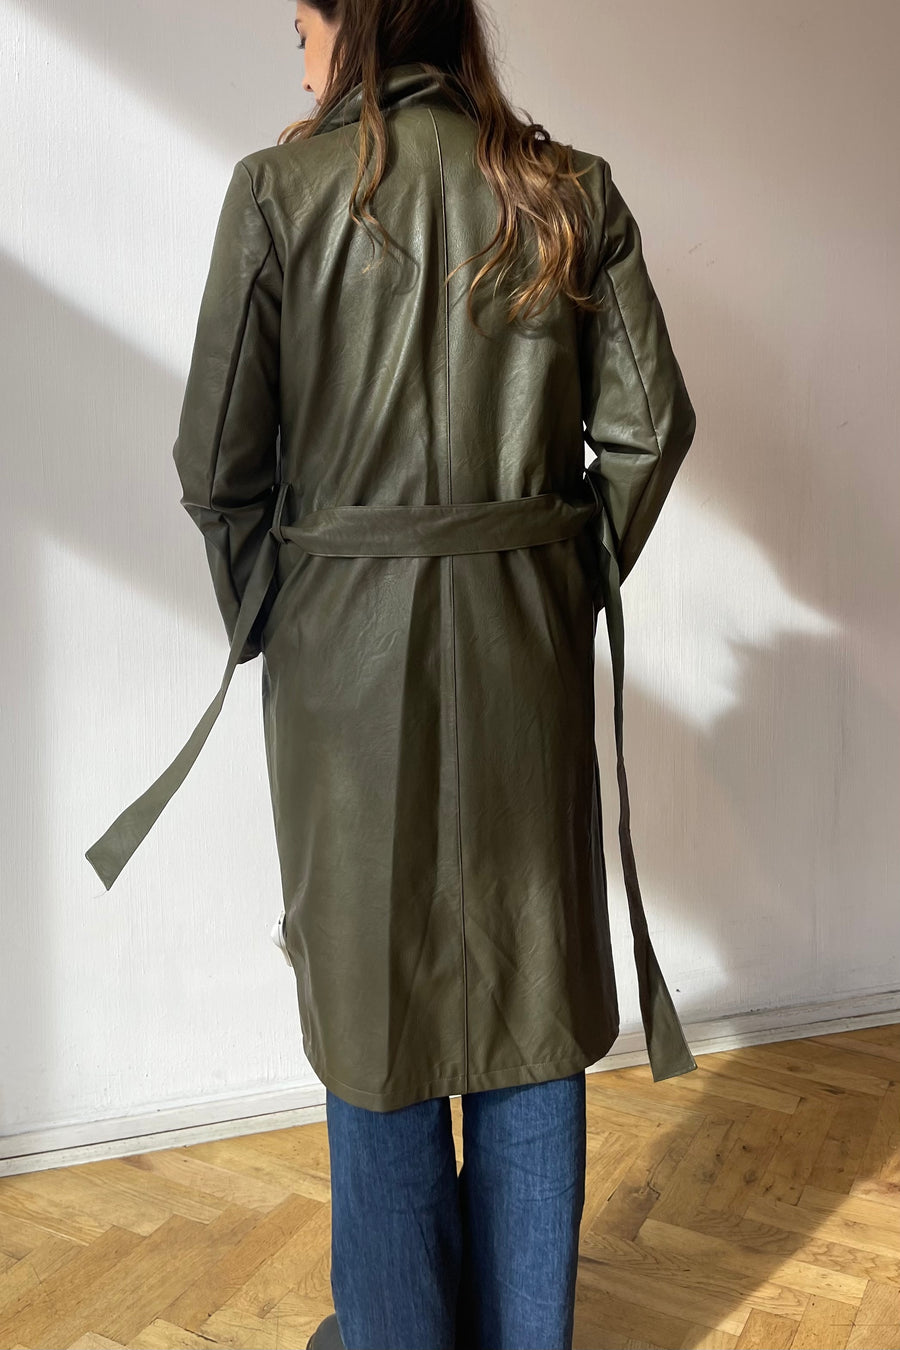 Vegan leather kaki green trench coat